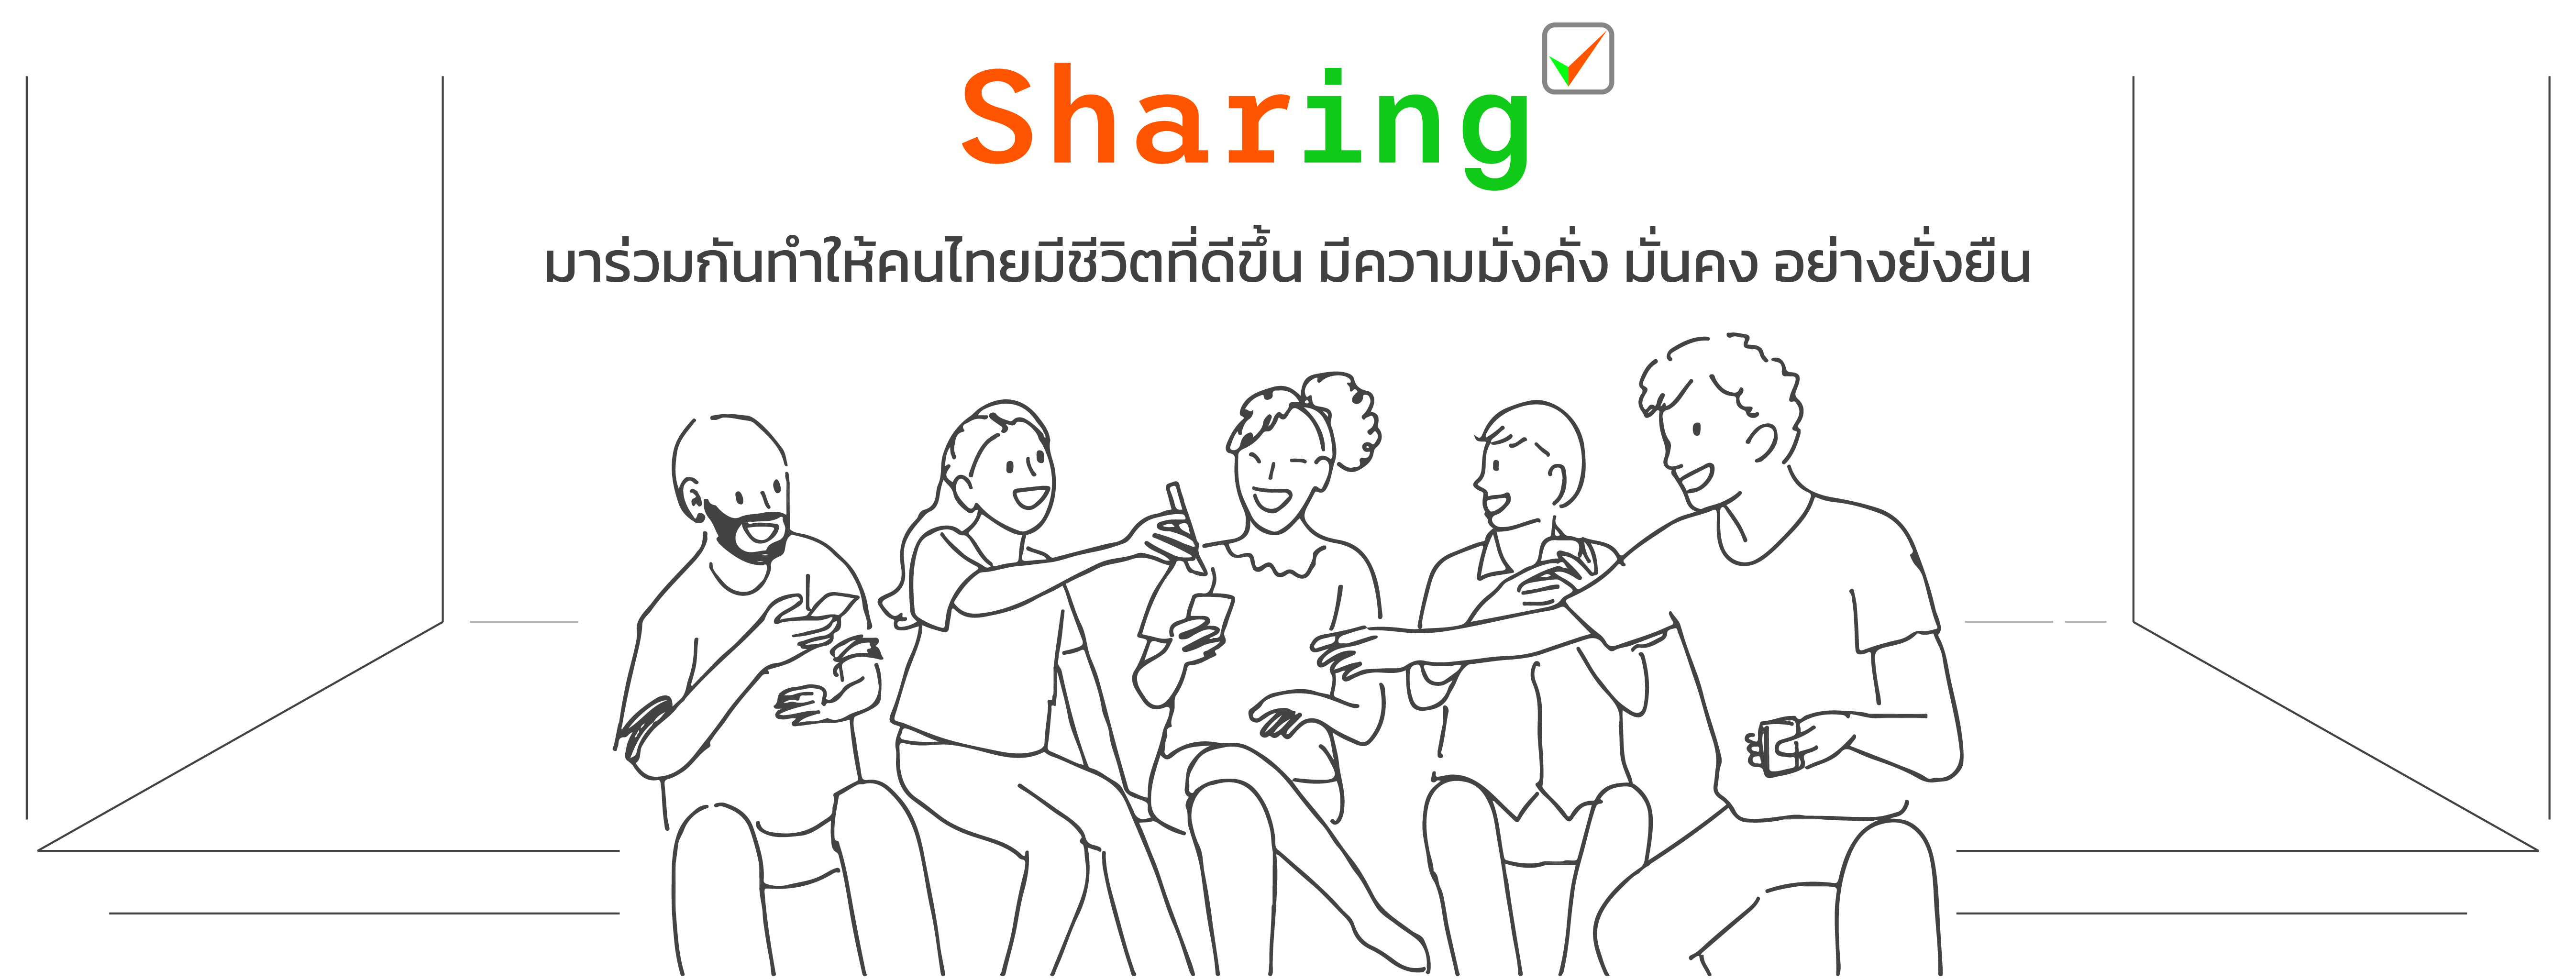 THAIPFA SHARING มาร่วมกันเป็นส่วนหนึ่งที่จะทำให้คนไทยมีชีวิตที่ดีขึ้น มีความมั่งคั่ง มั่นคง และยั่งยืน กันนะครับ